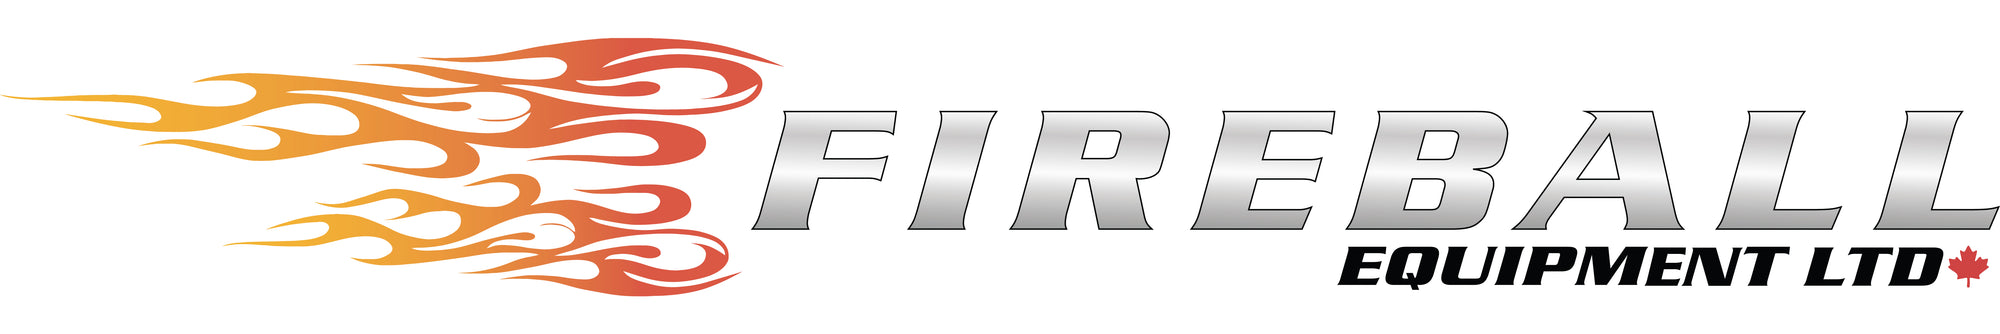 Fireball Equipment Ltd. announces Liam Murphy as President